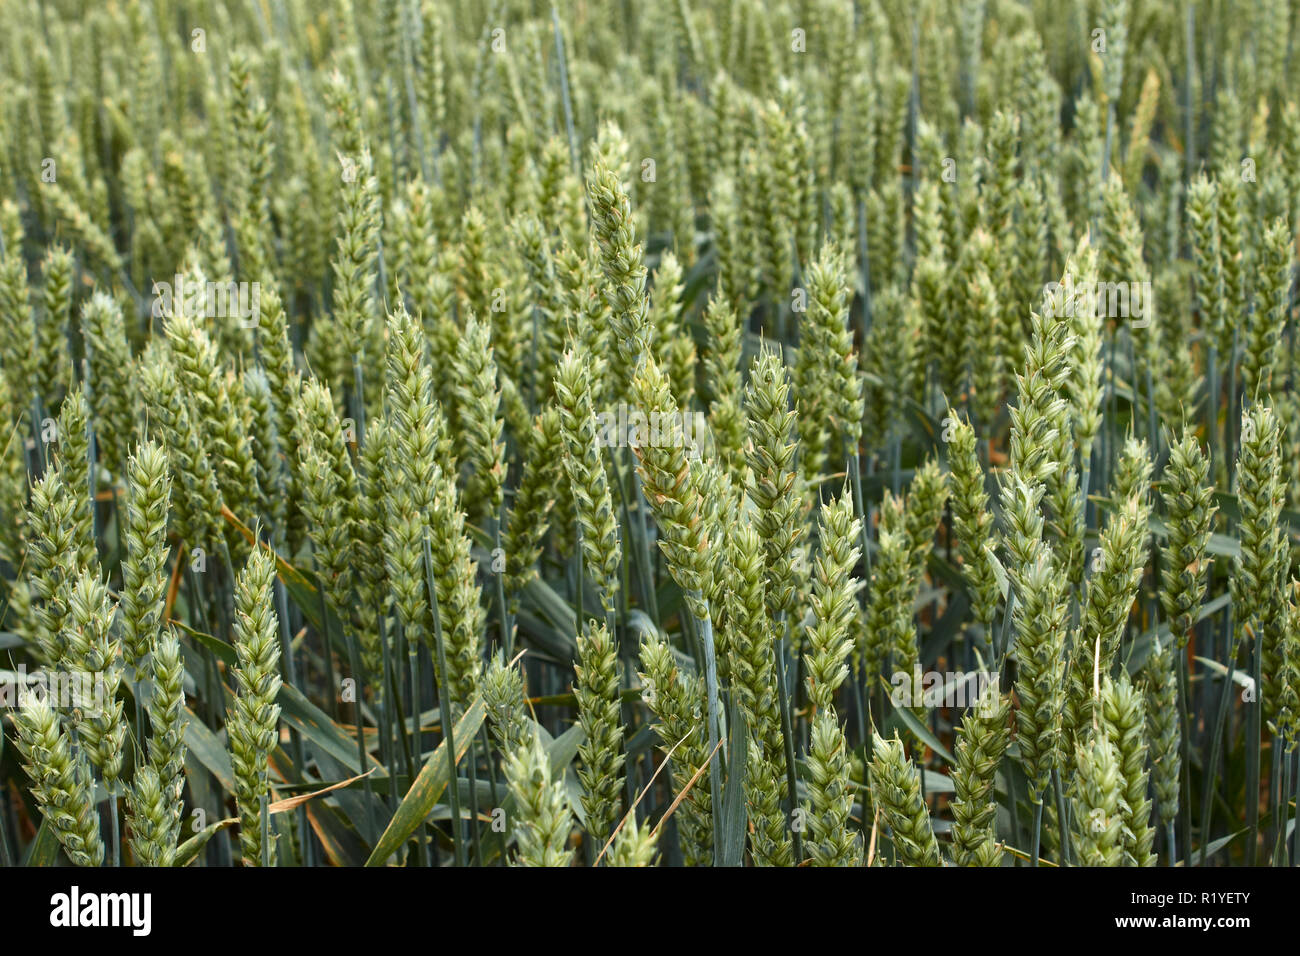 Espigas de trigo, trigo seco. Stock Photo